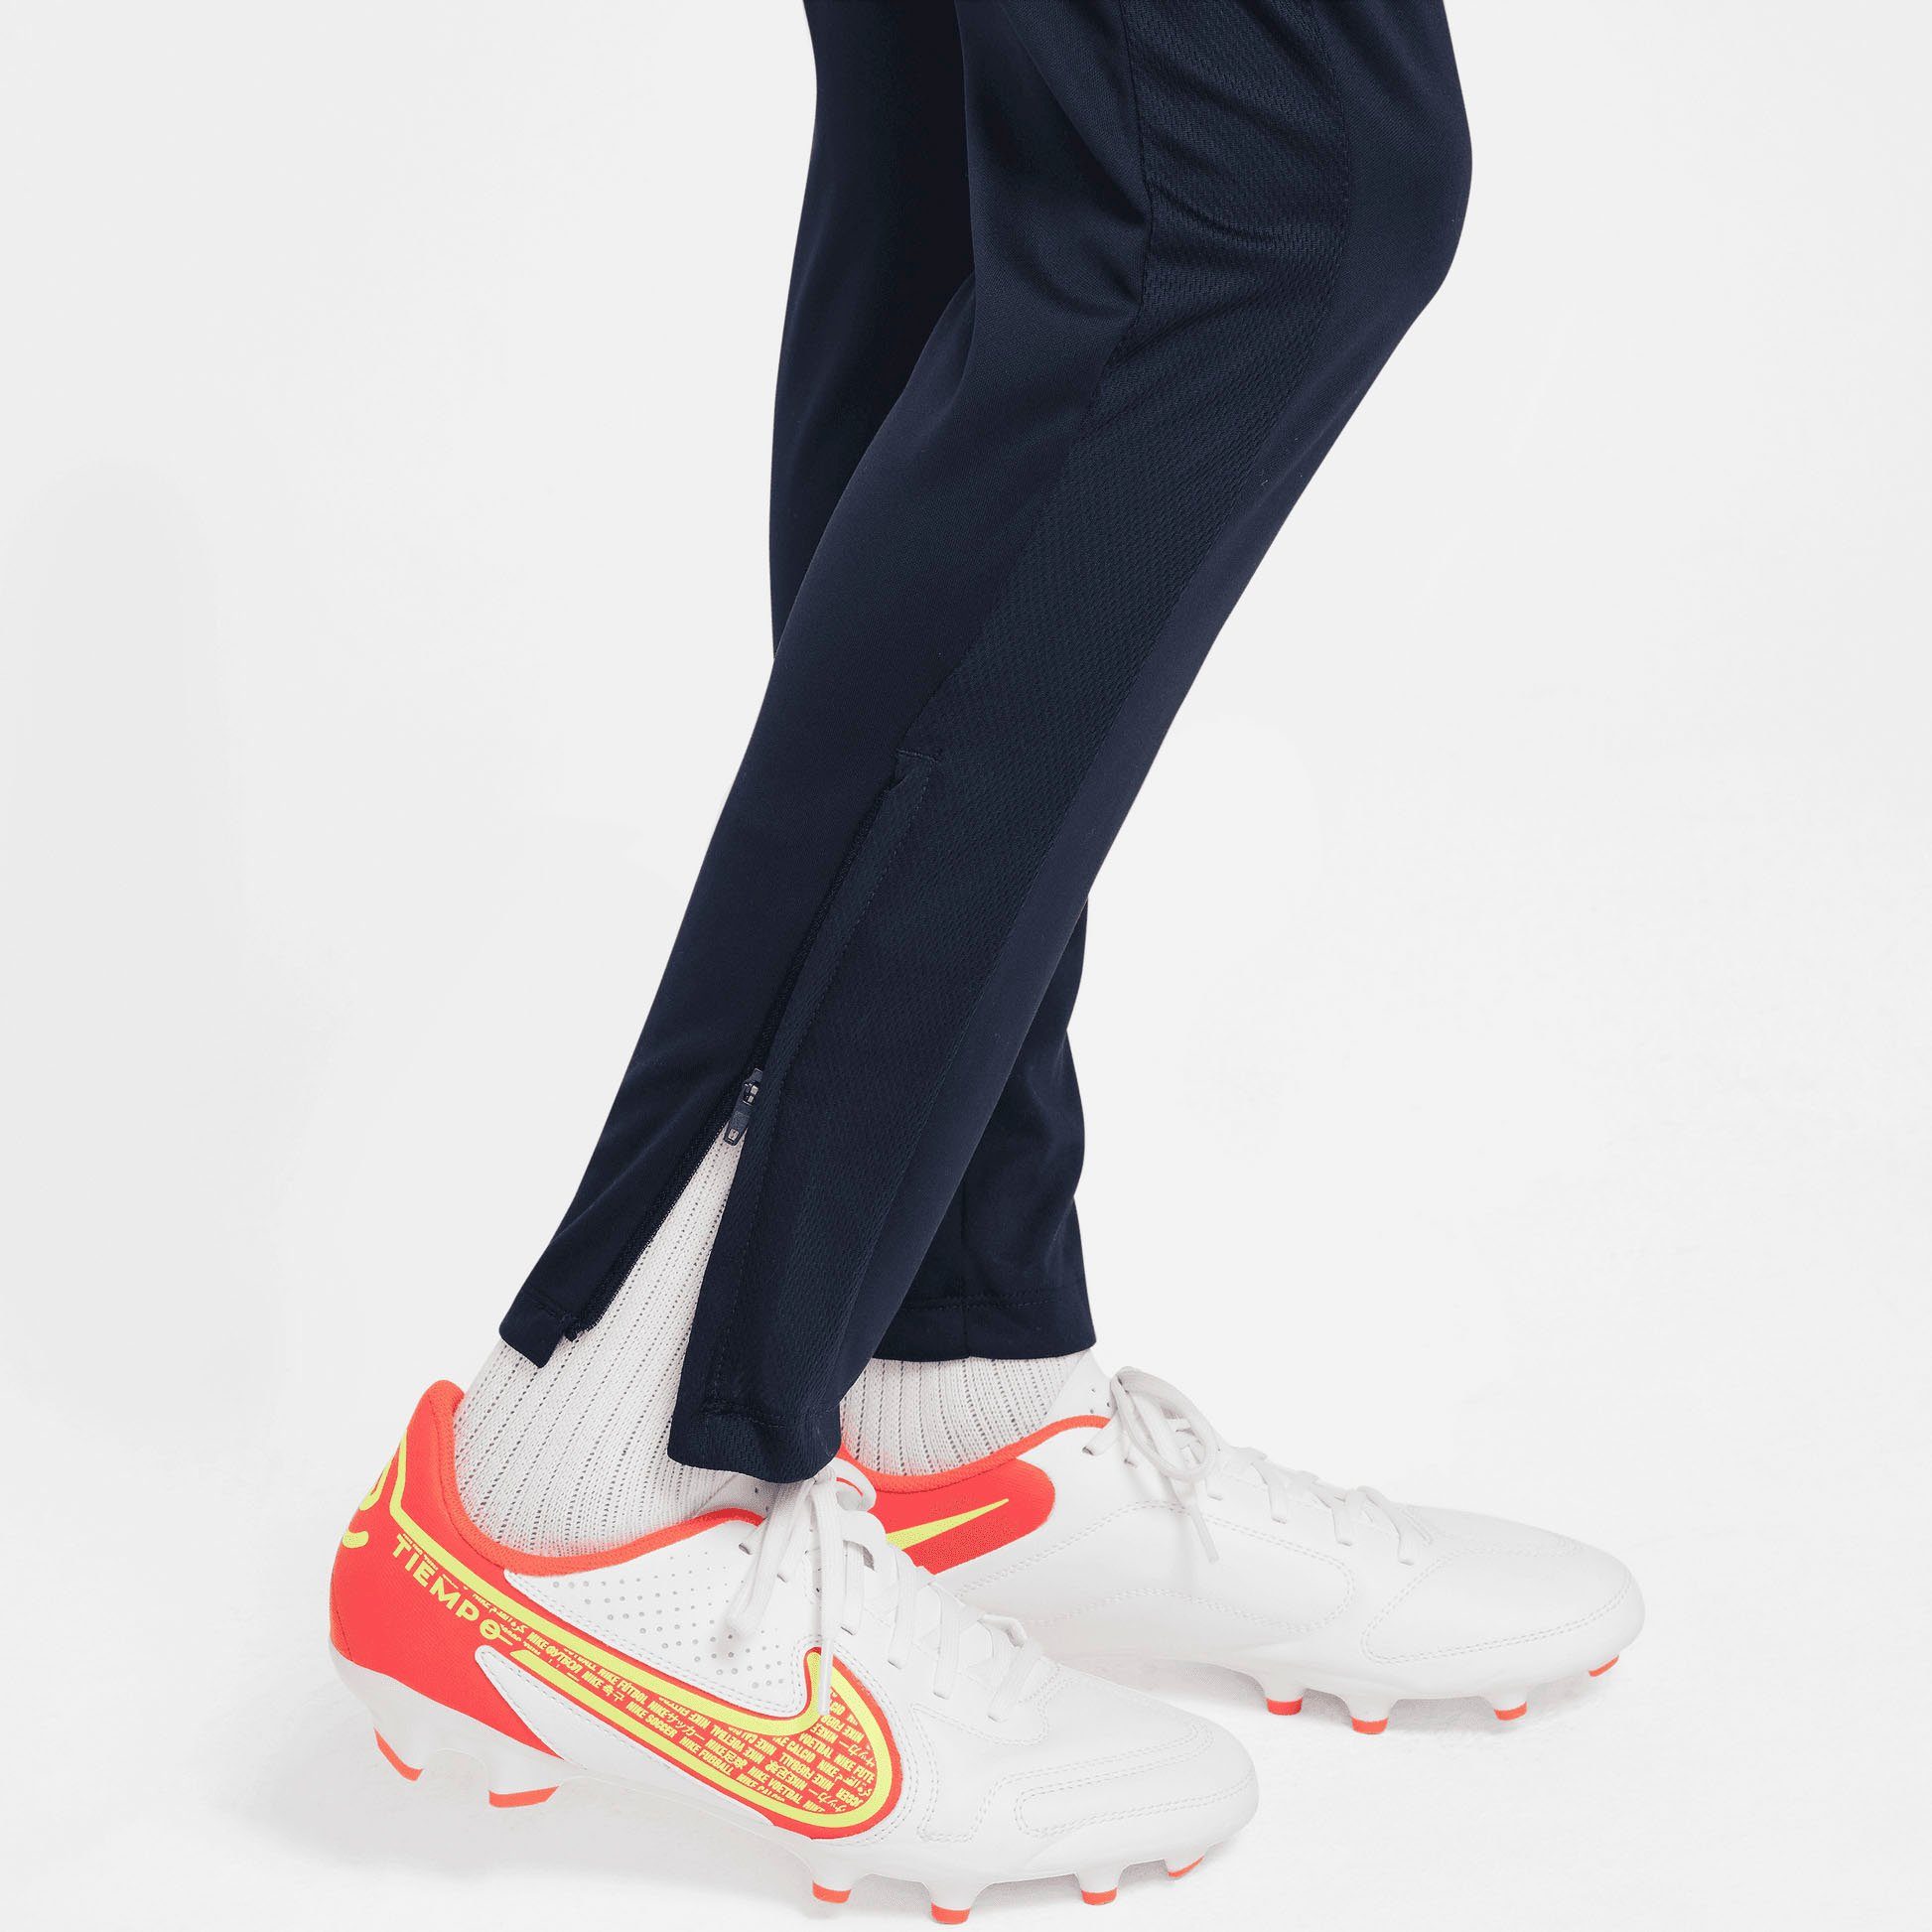 ACD NK Nike Kinder KPZ PANT BR - Trainingshose K für OBSIDIAN/OBSIDIAN/OBSIDIAN/WHITE DF